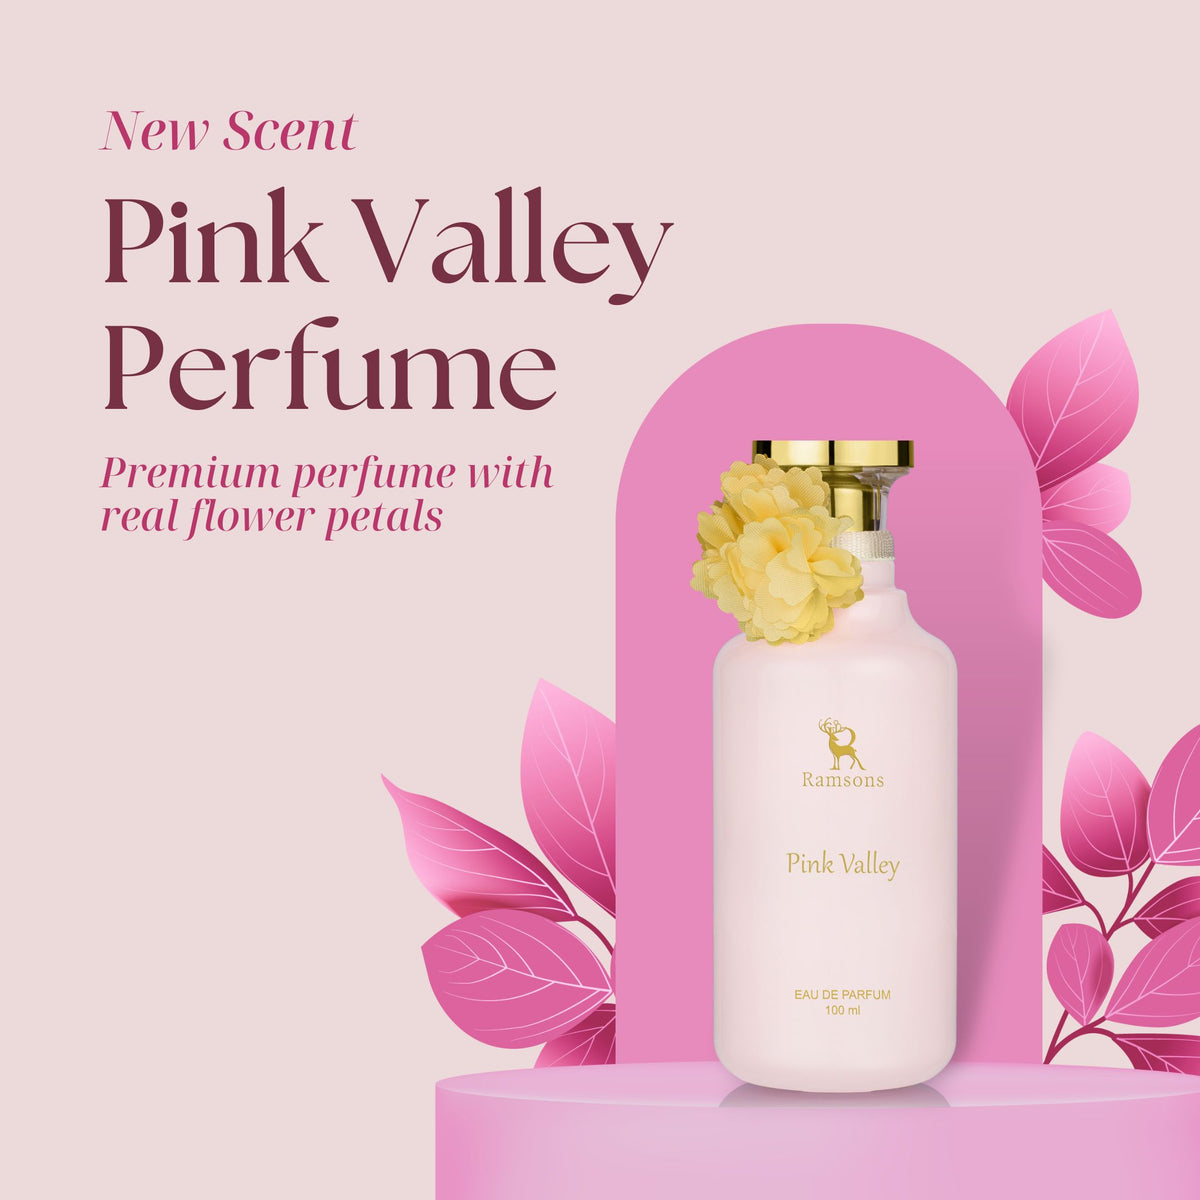 Pink Valley - Eau De Parfum